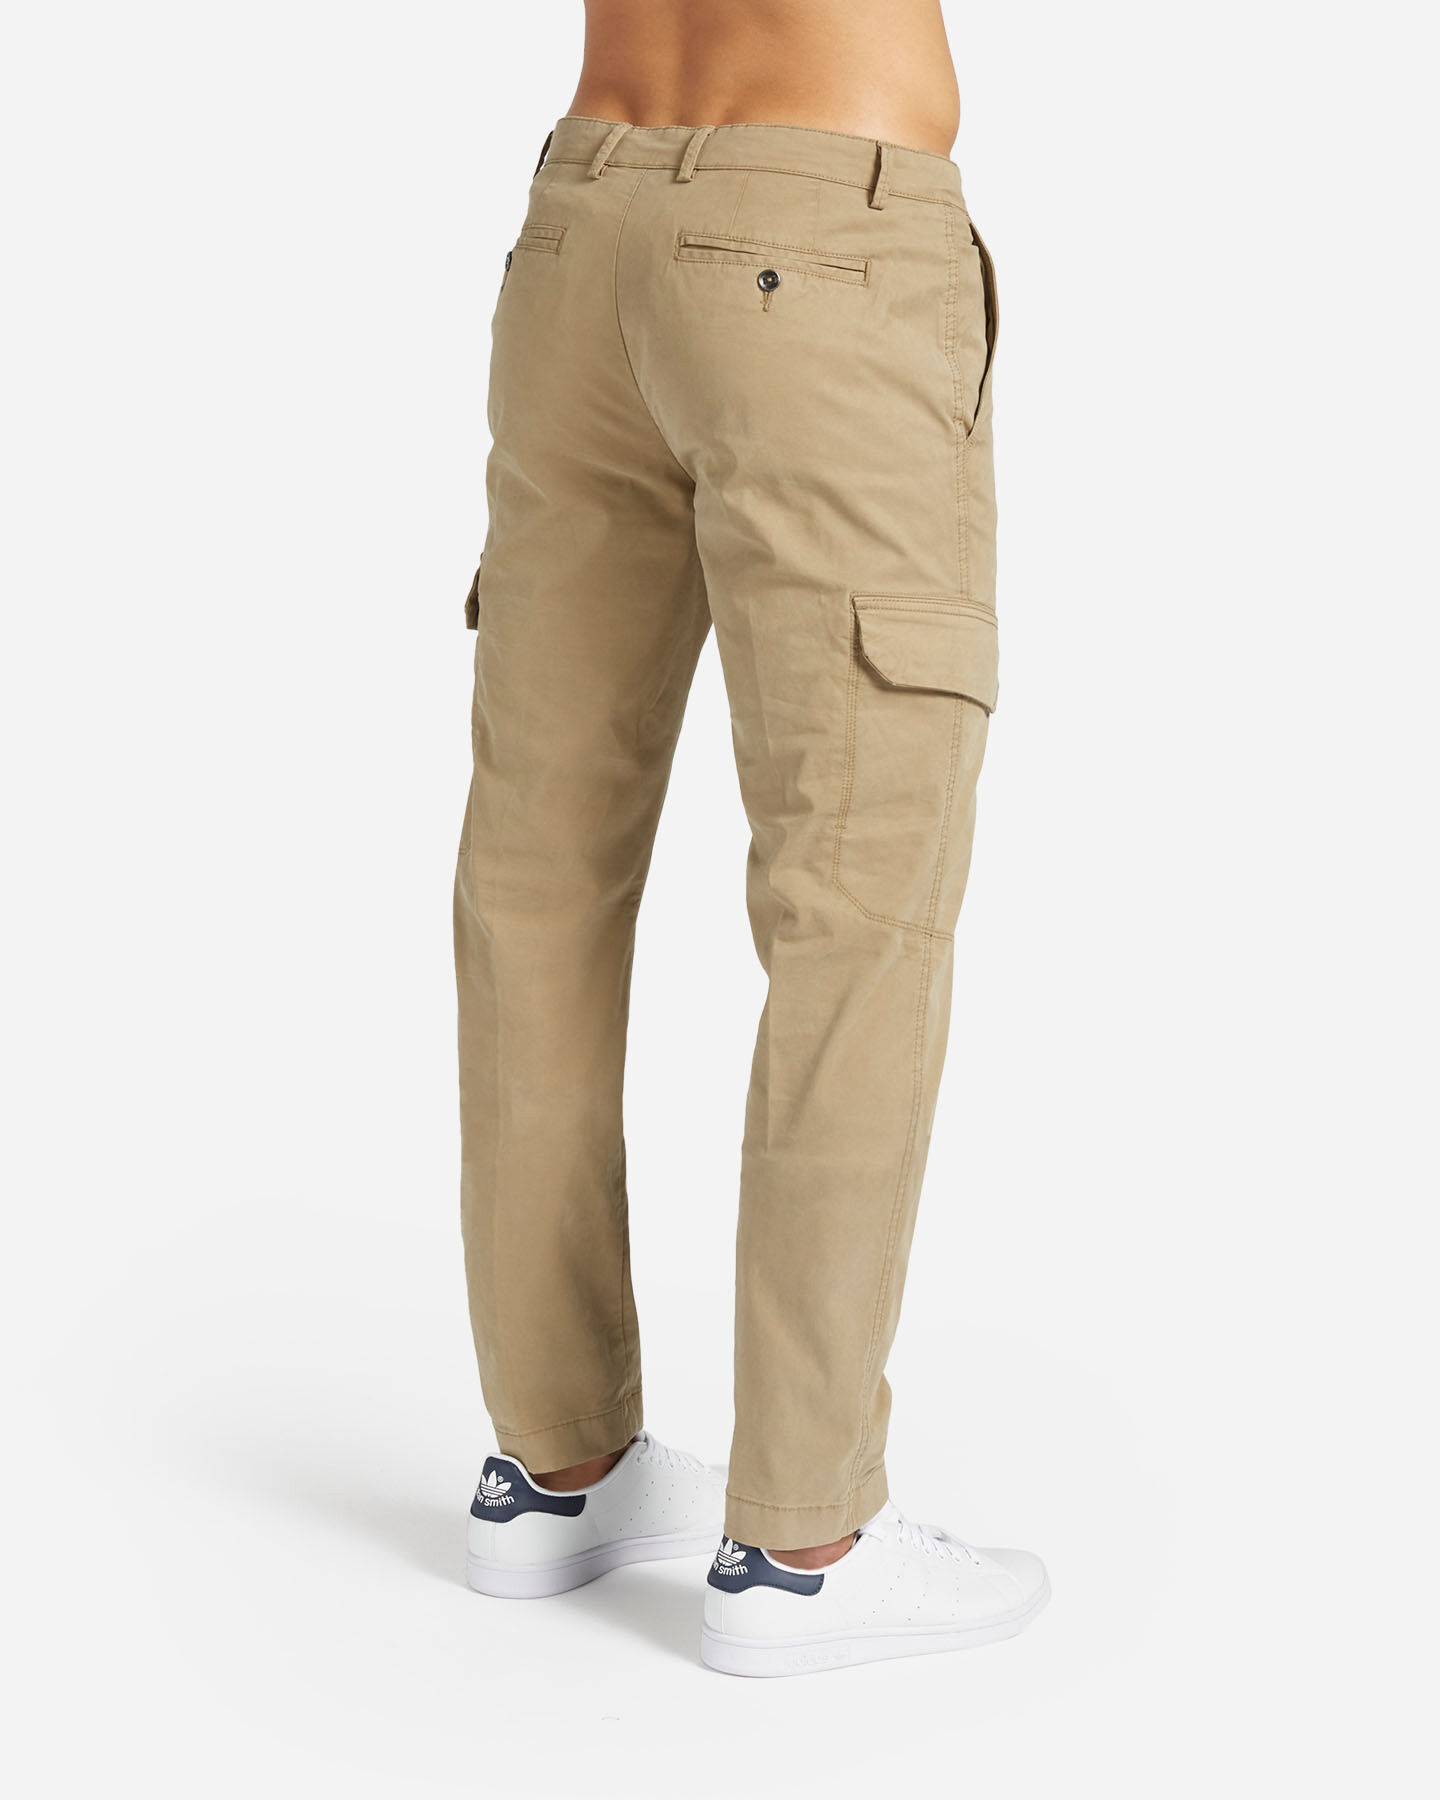  Pantalone BEST COMPANY NAVIGLI M S4127026|831|46 scatto 1